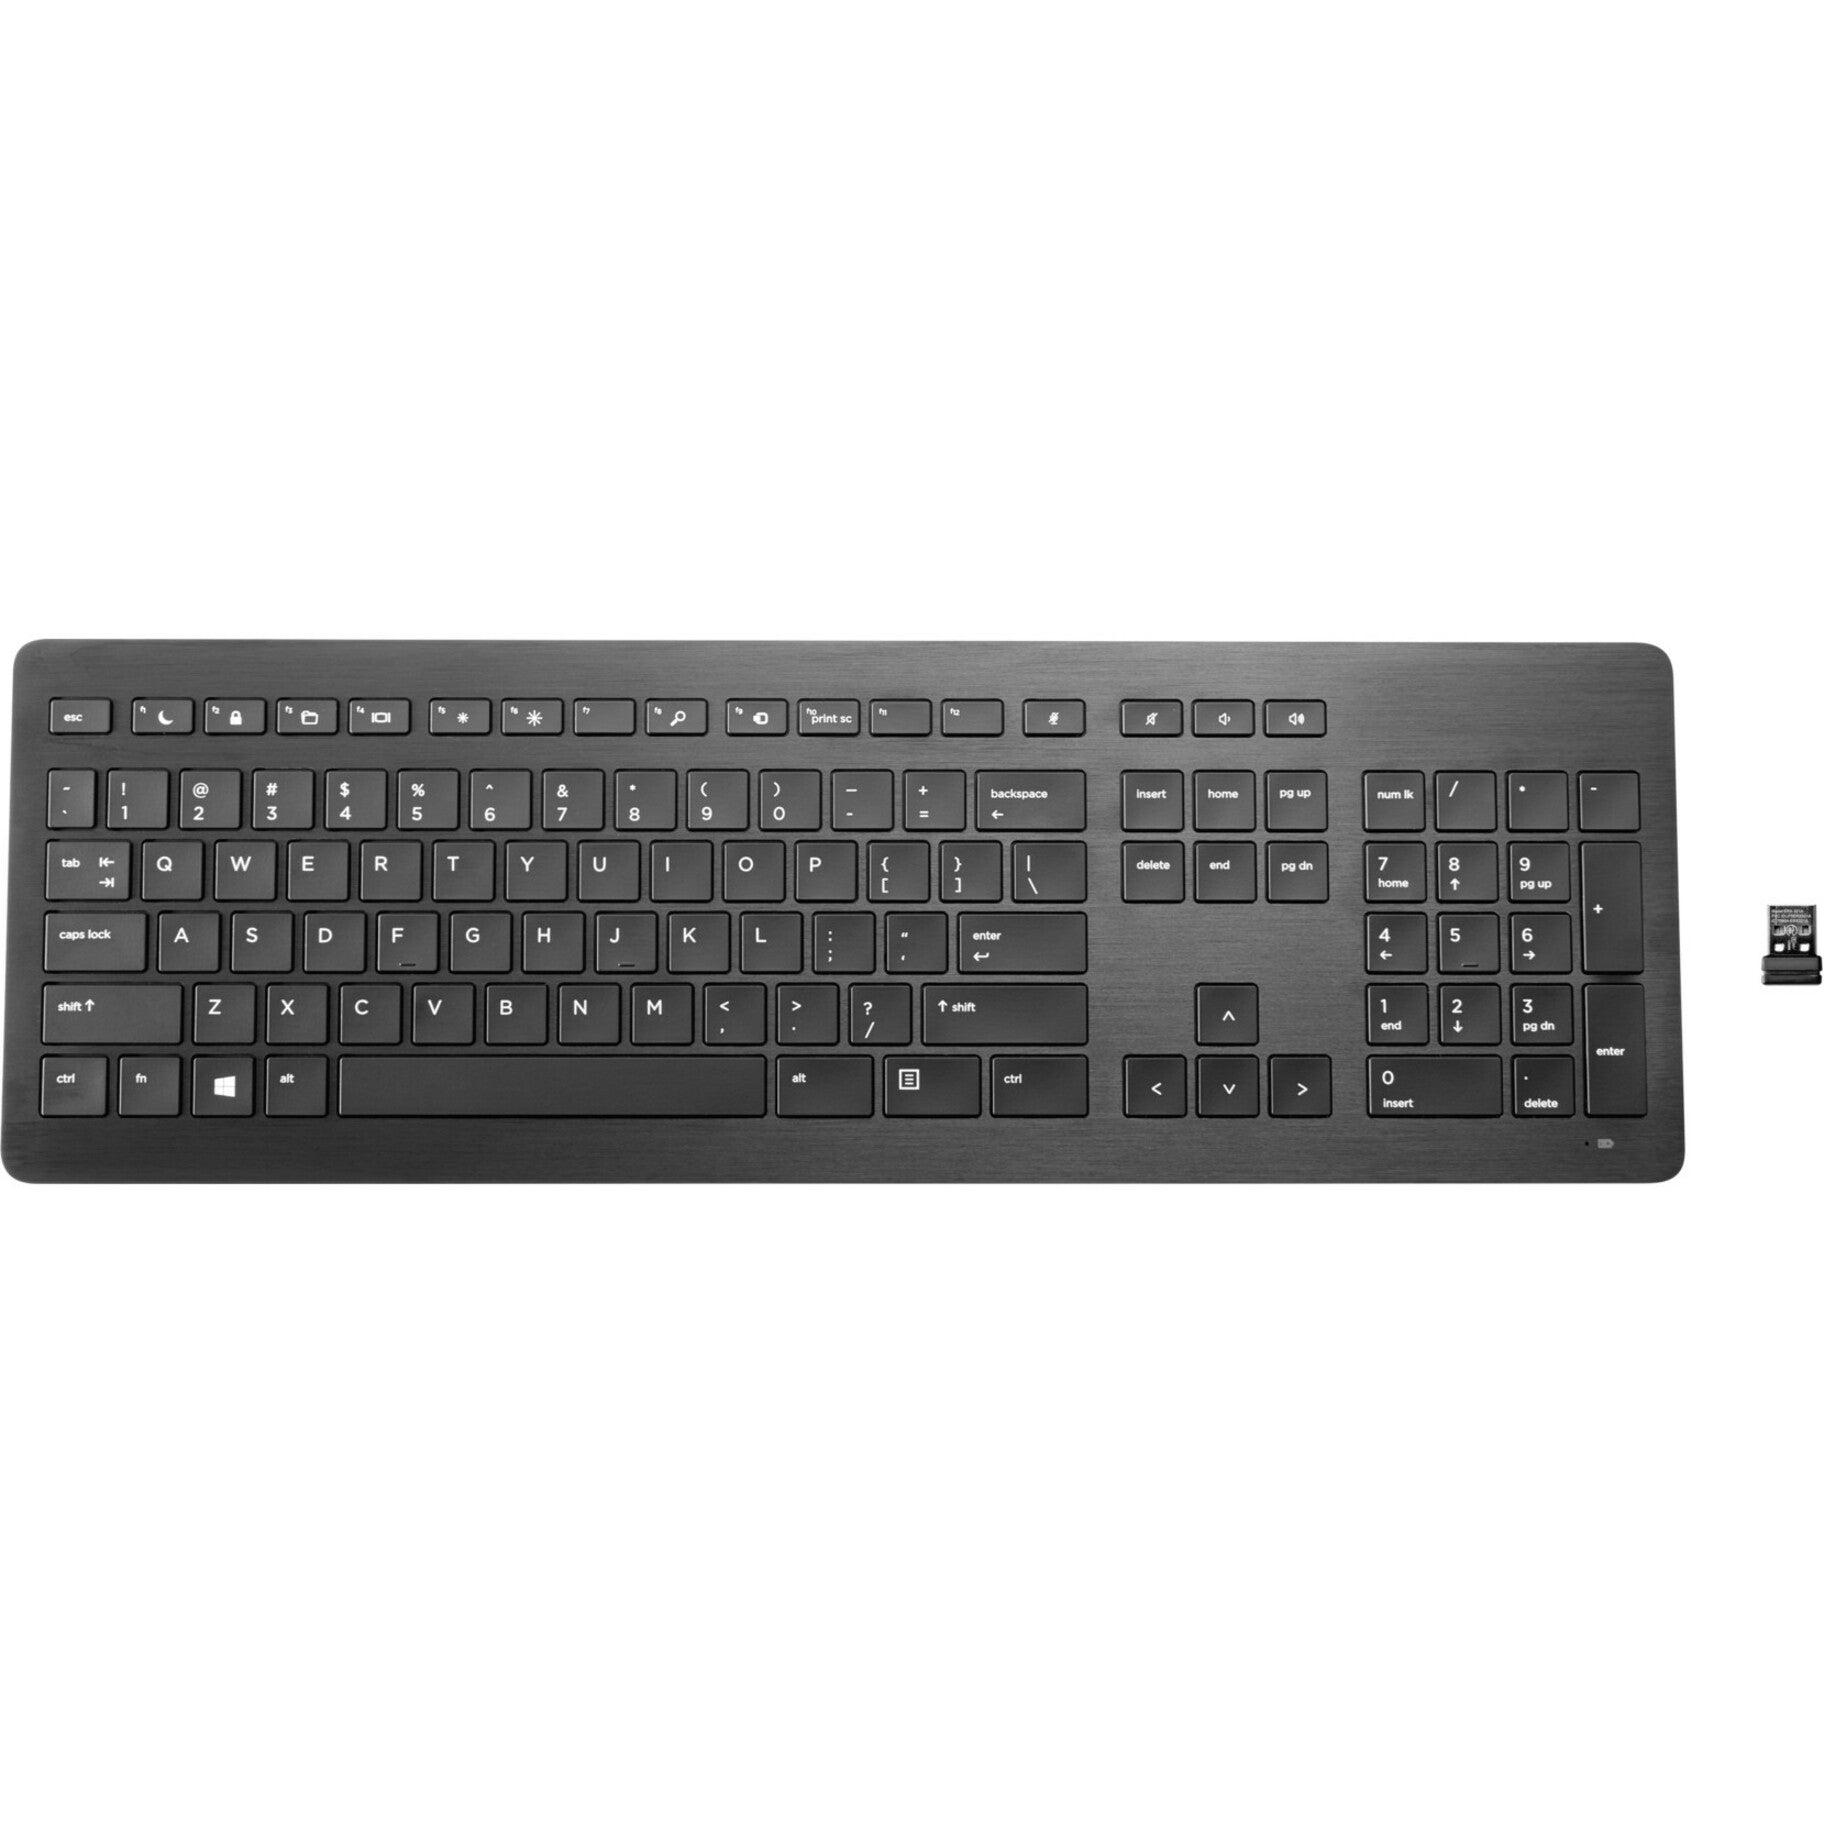 HP Wireless Premium Keyboard U.S. - English, QWERTY Layout, 109 Keys, Scissors Keyswitch Technology